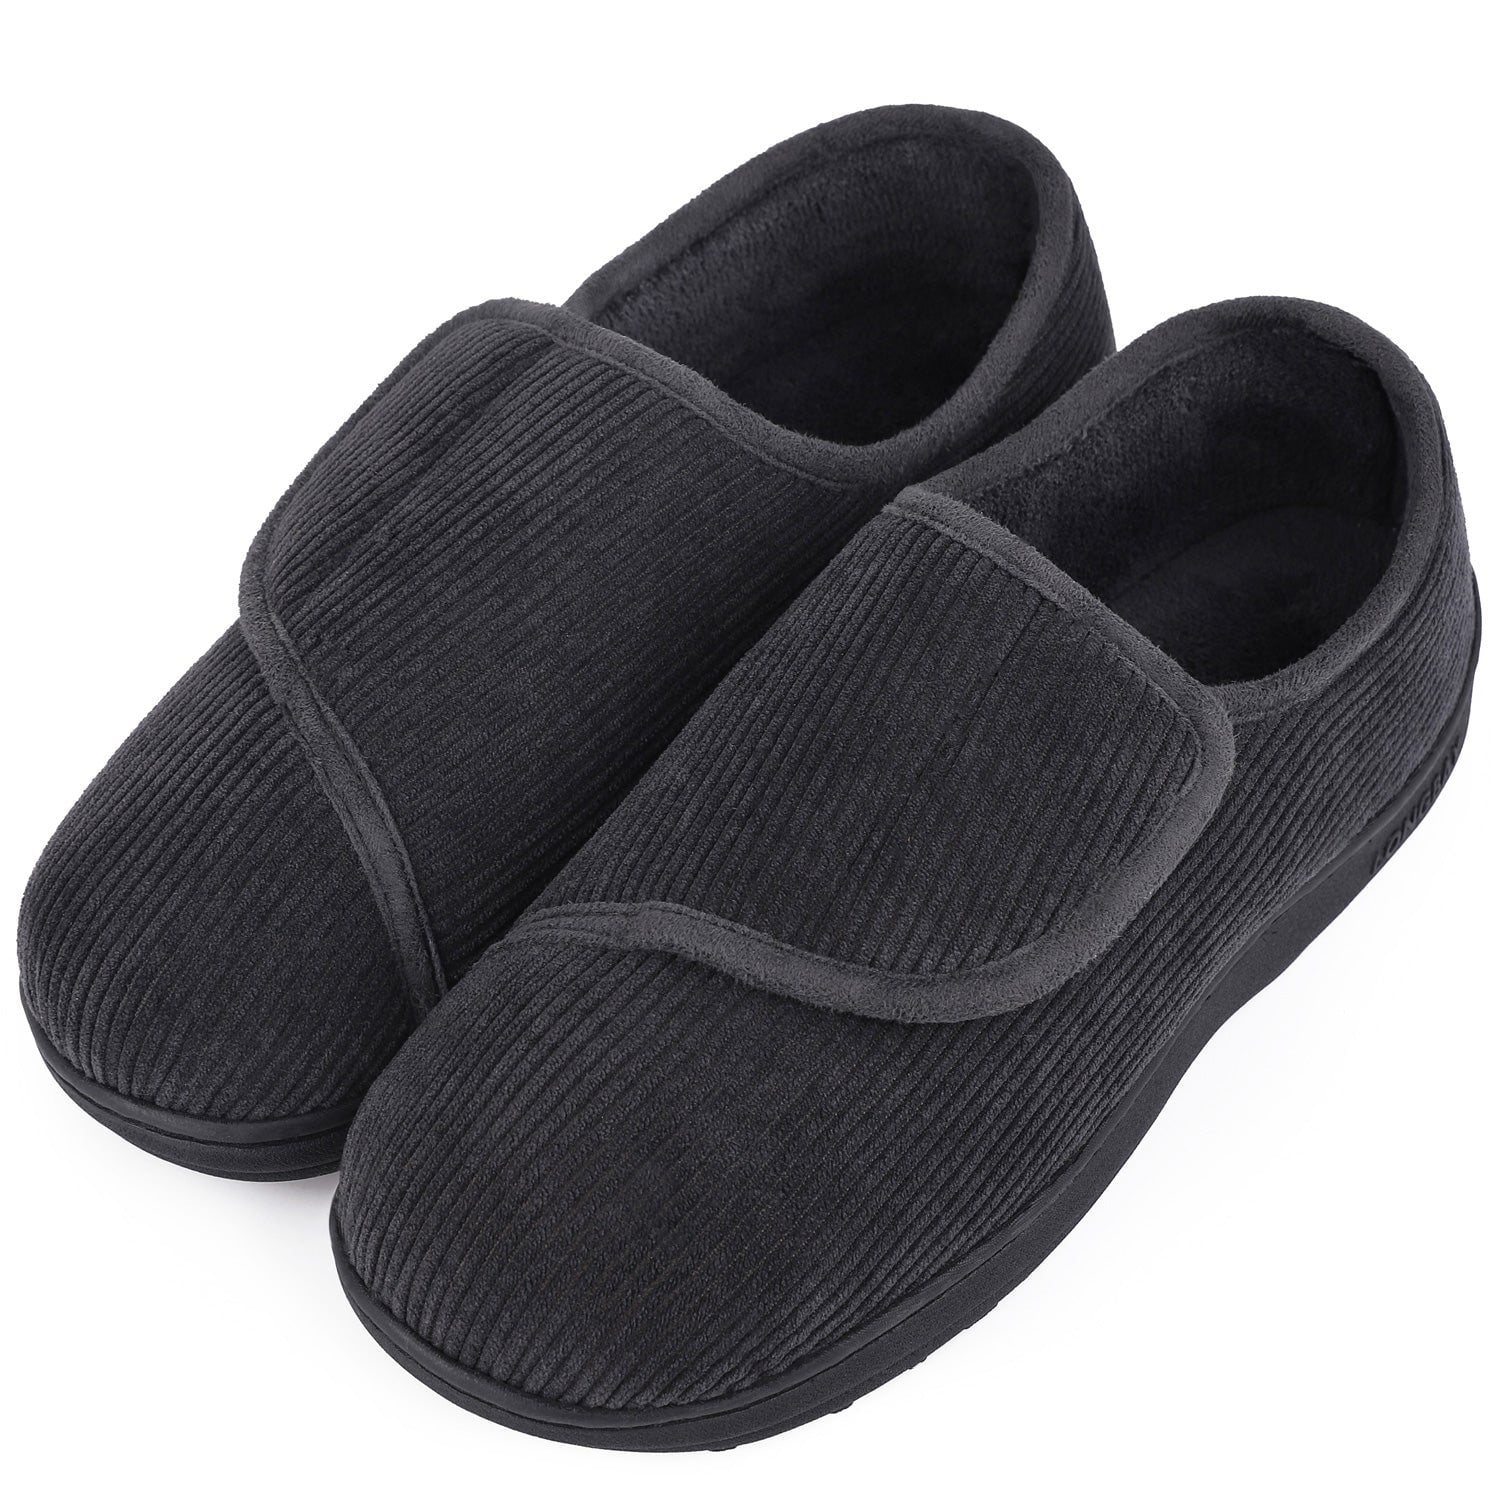 LongBay Men's Memory Foam Diabetic Slippers Comfy Warm Plush Fleece ...